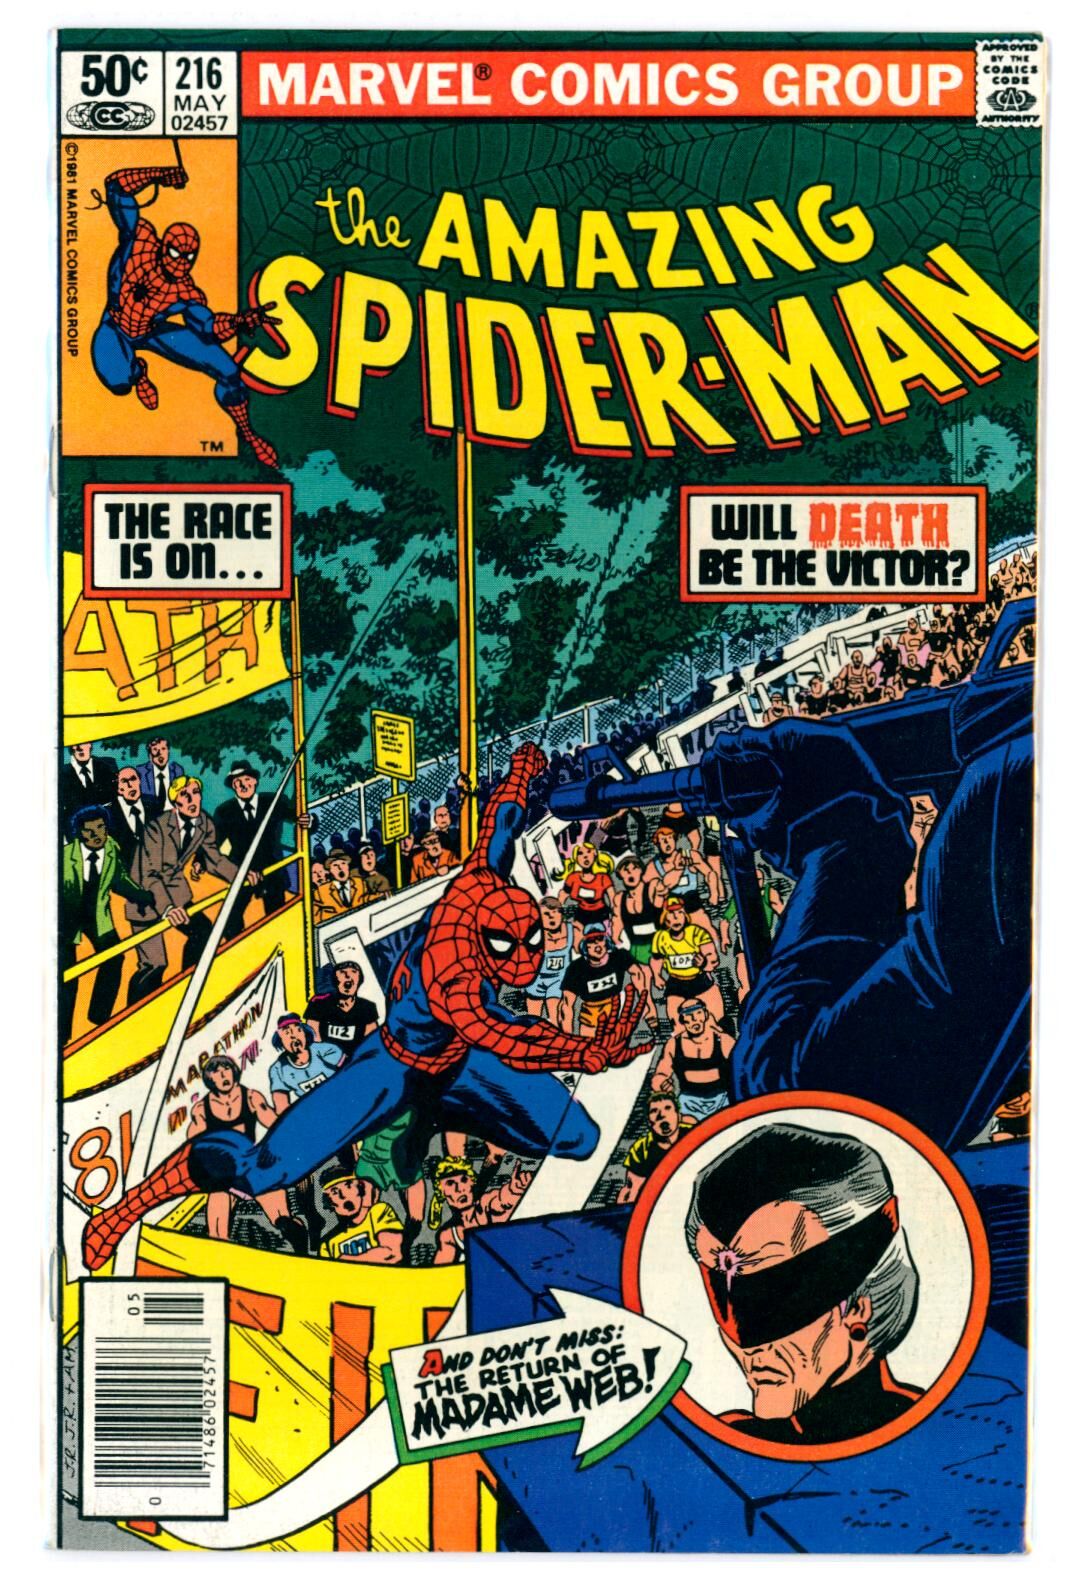 Amazing Spider-Man #216